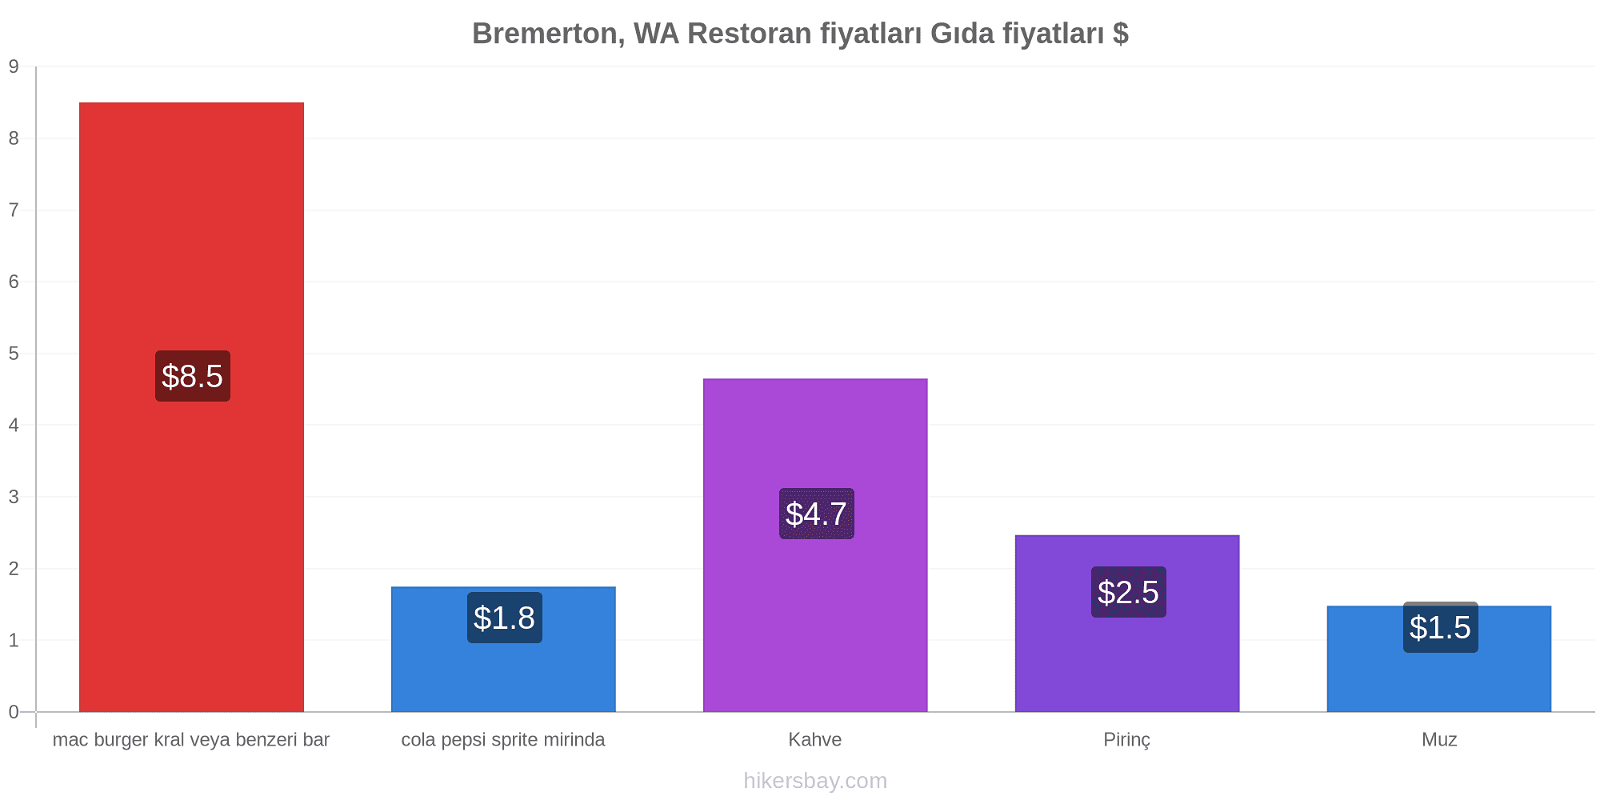 Bremerton, WA fiyat değişiklikleri hikersbay.com